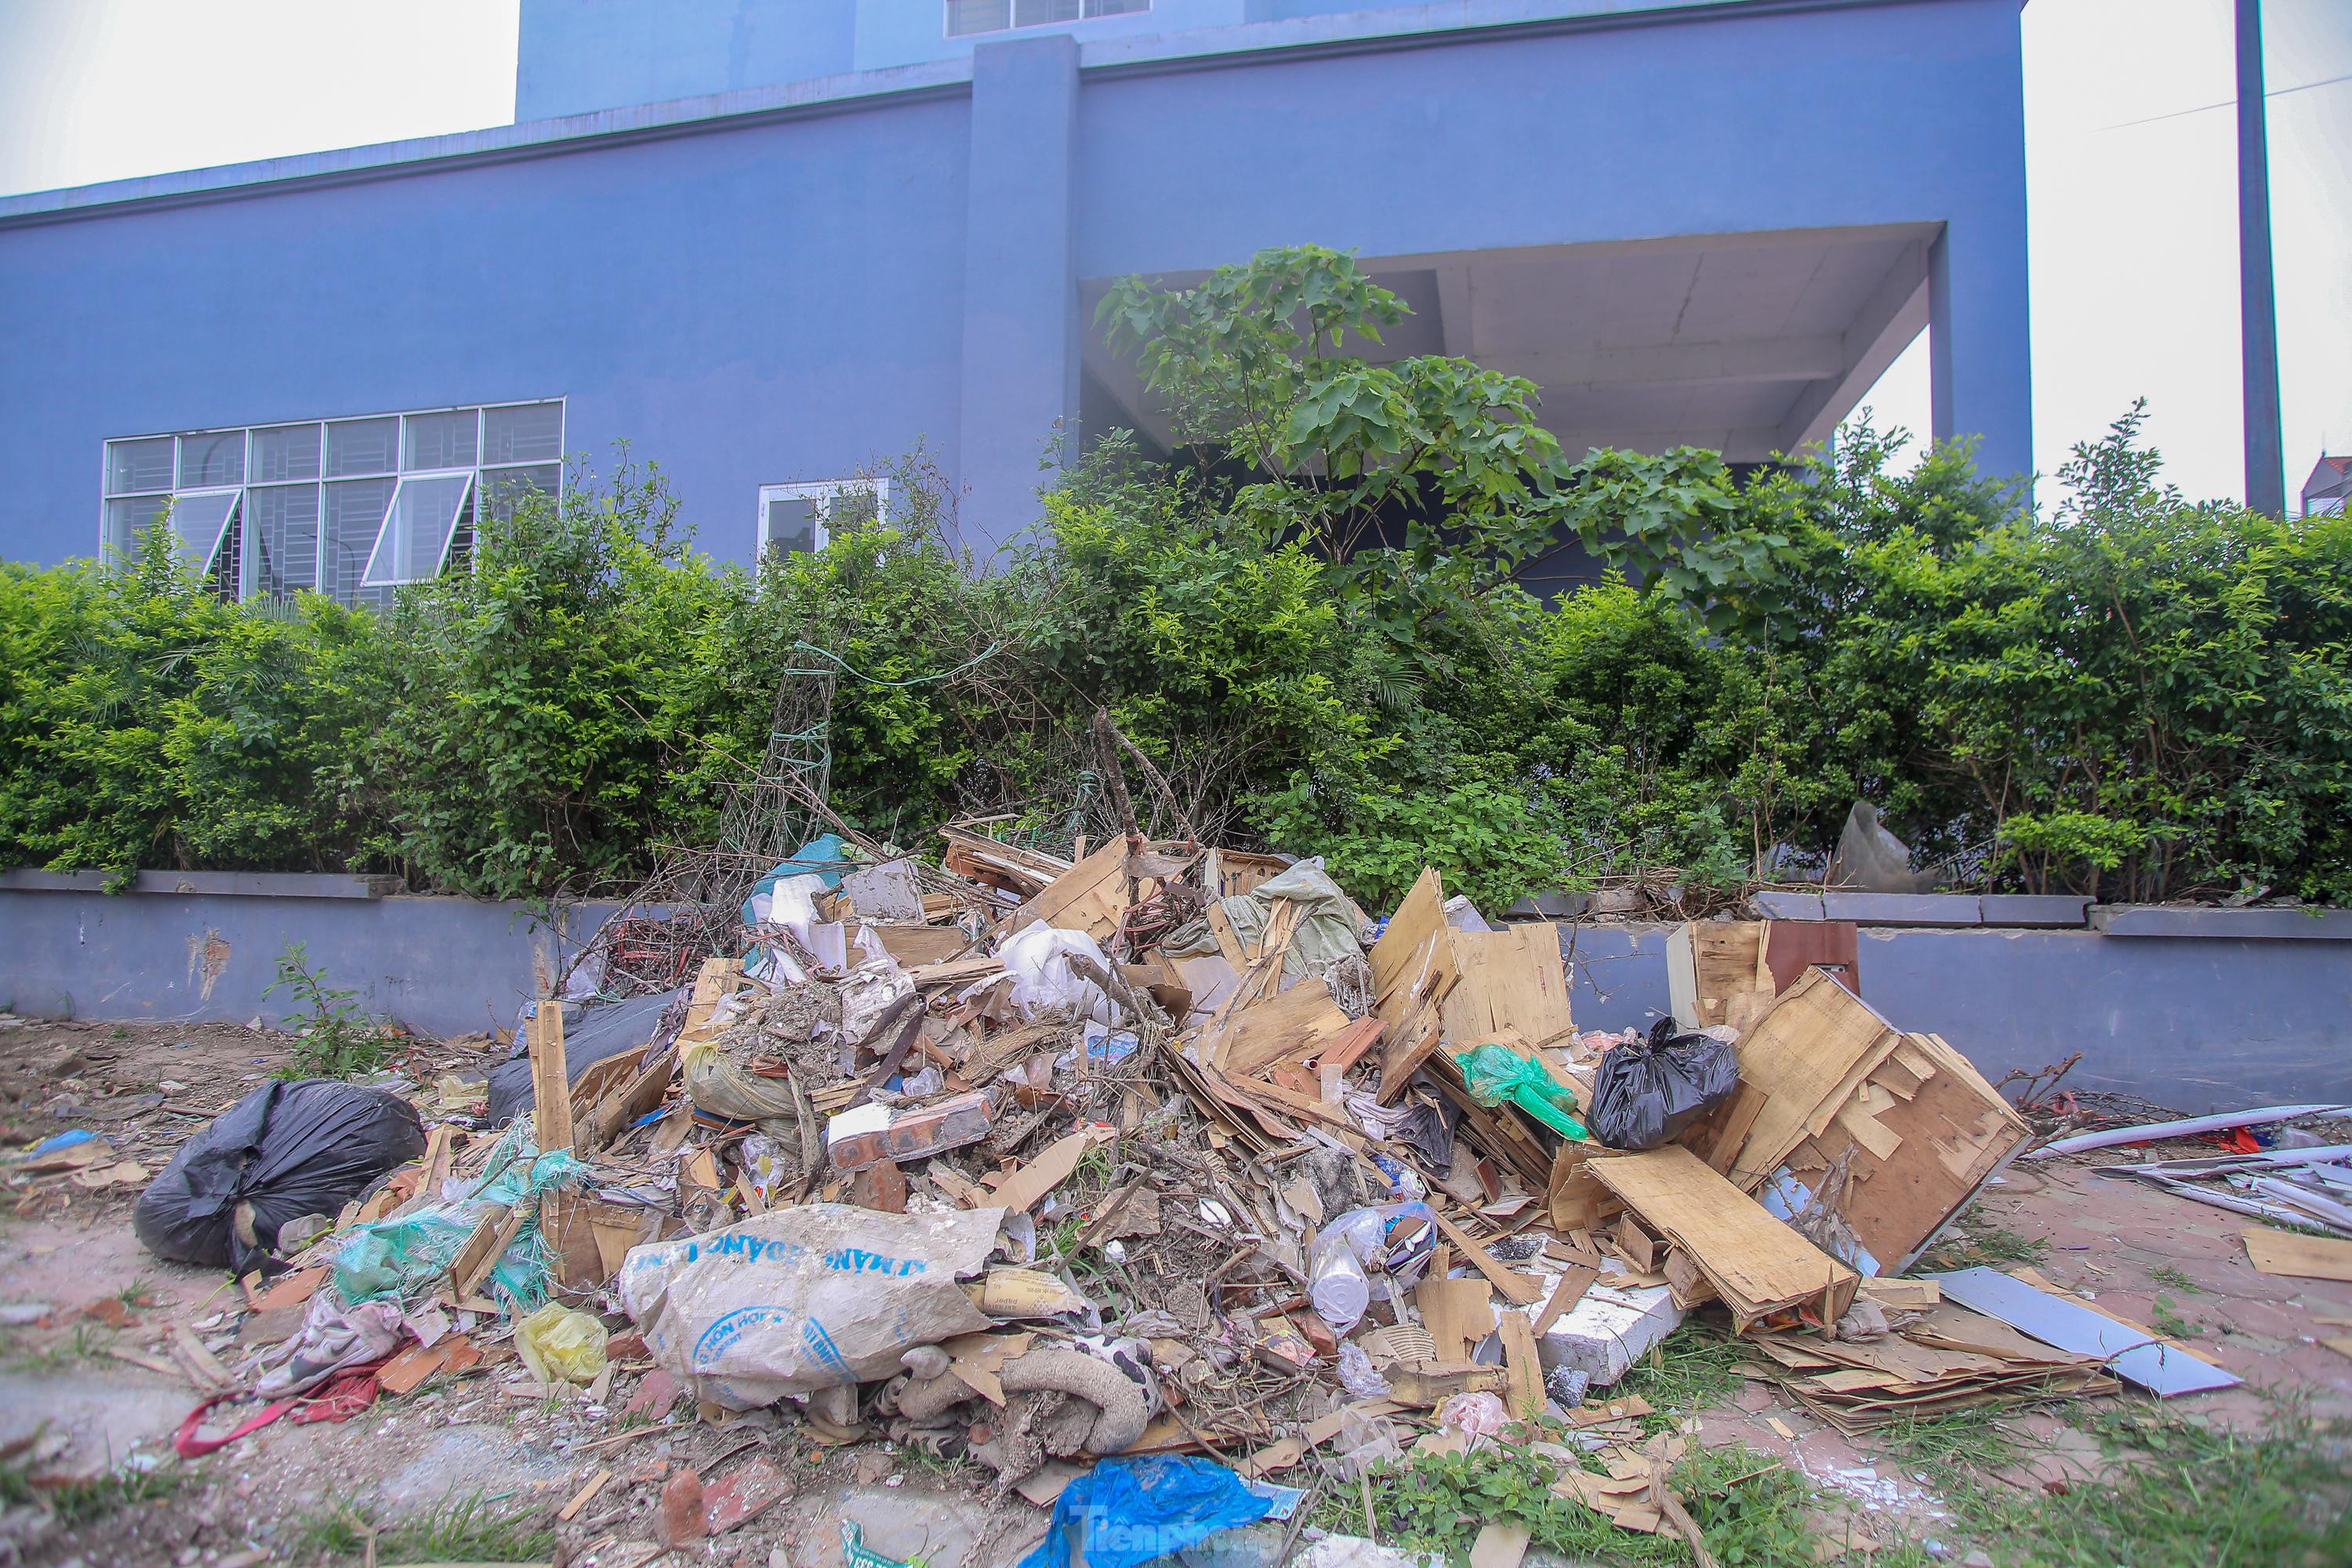  Khu chung cư tọa lạc vị trí đắc địa ở Hà Nội thành nơi tập kết rác  - Ảnh 5.